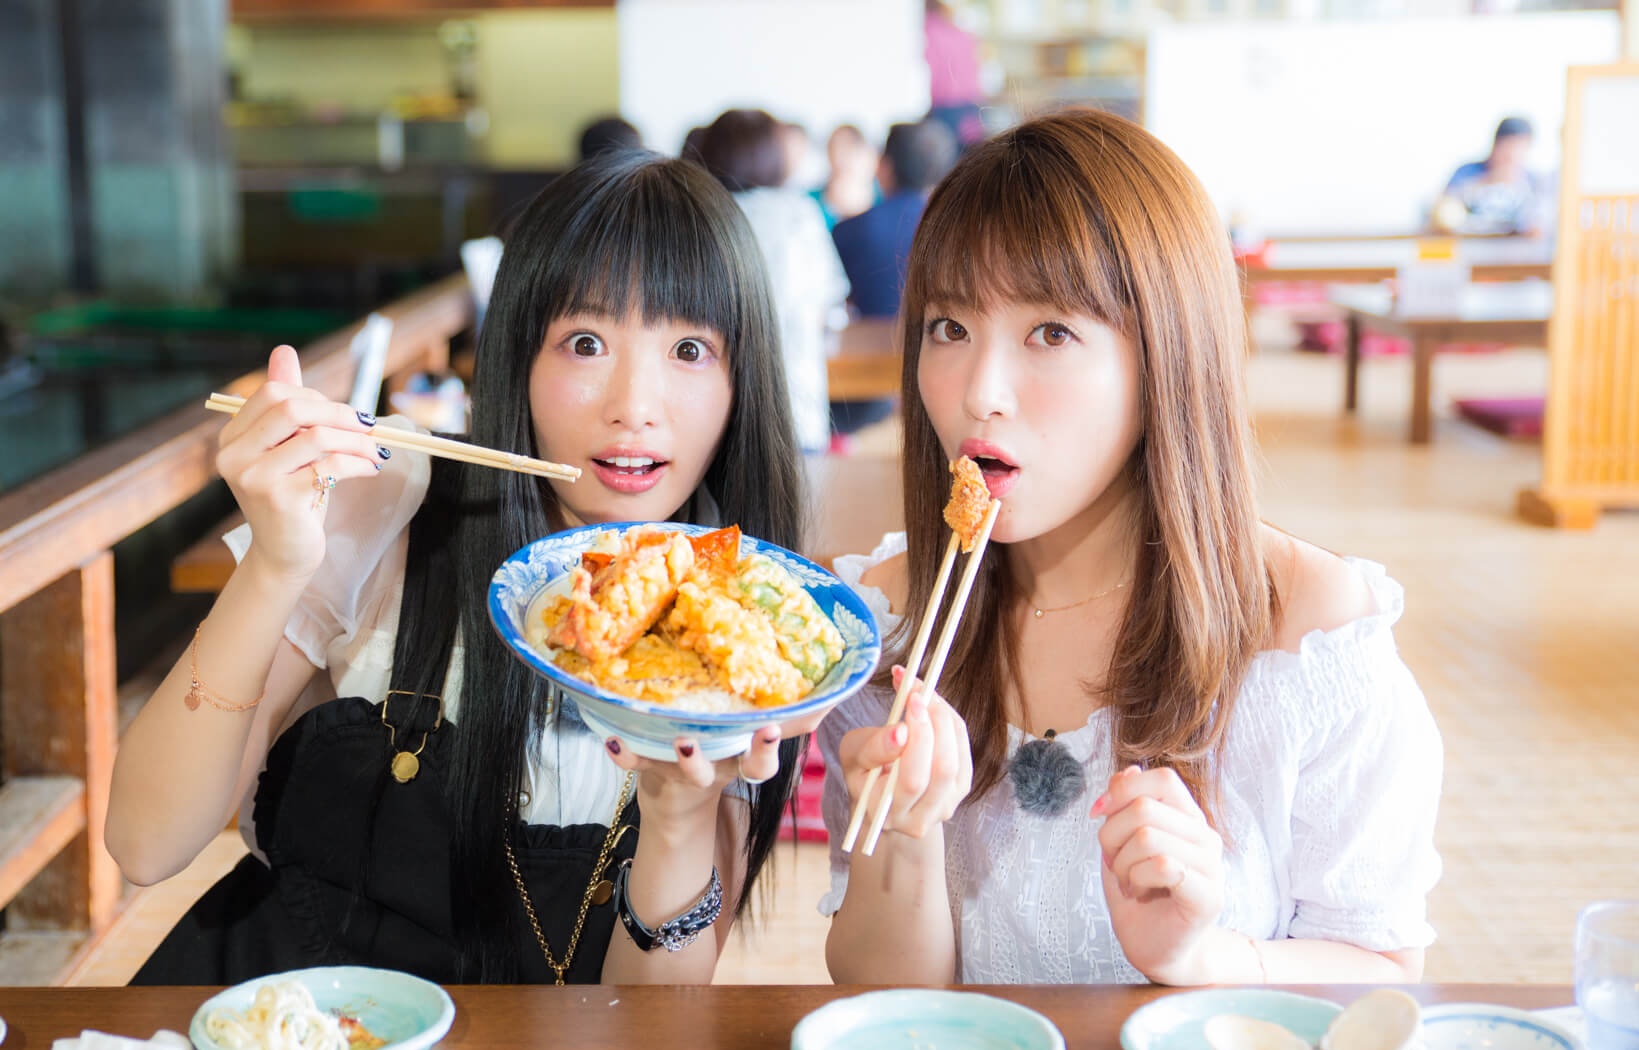 'Itadakimasu!' Basic Japanese for Dining Out